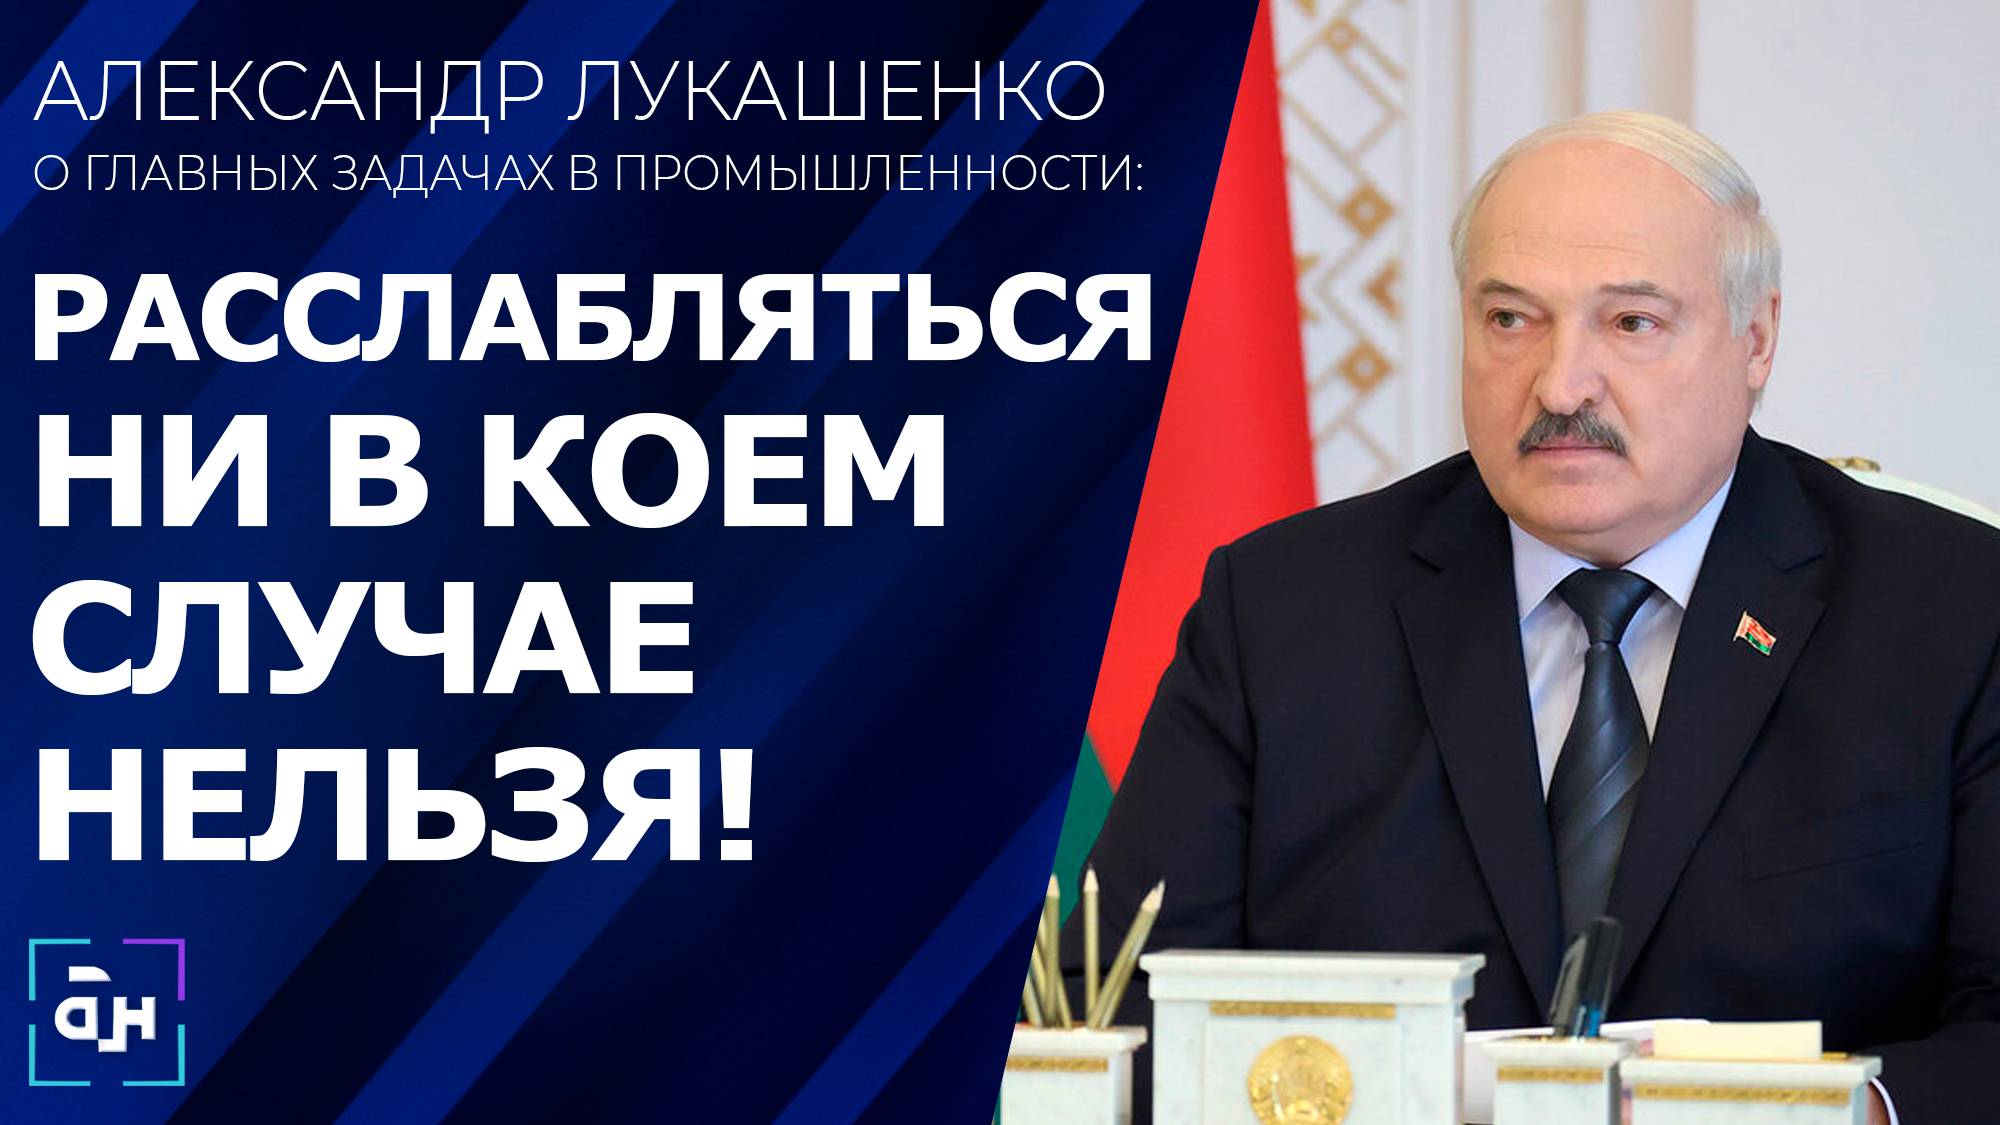 Лукашенко: ситуация в промышленности складывается неплохо, но это не повод почивать на лаврах